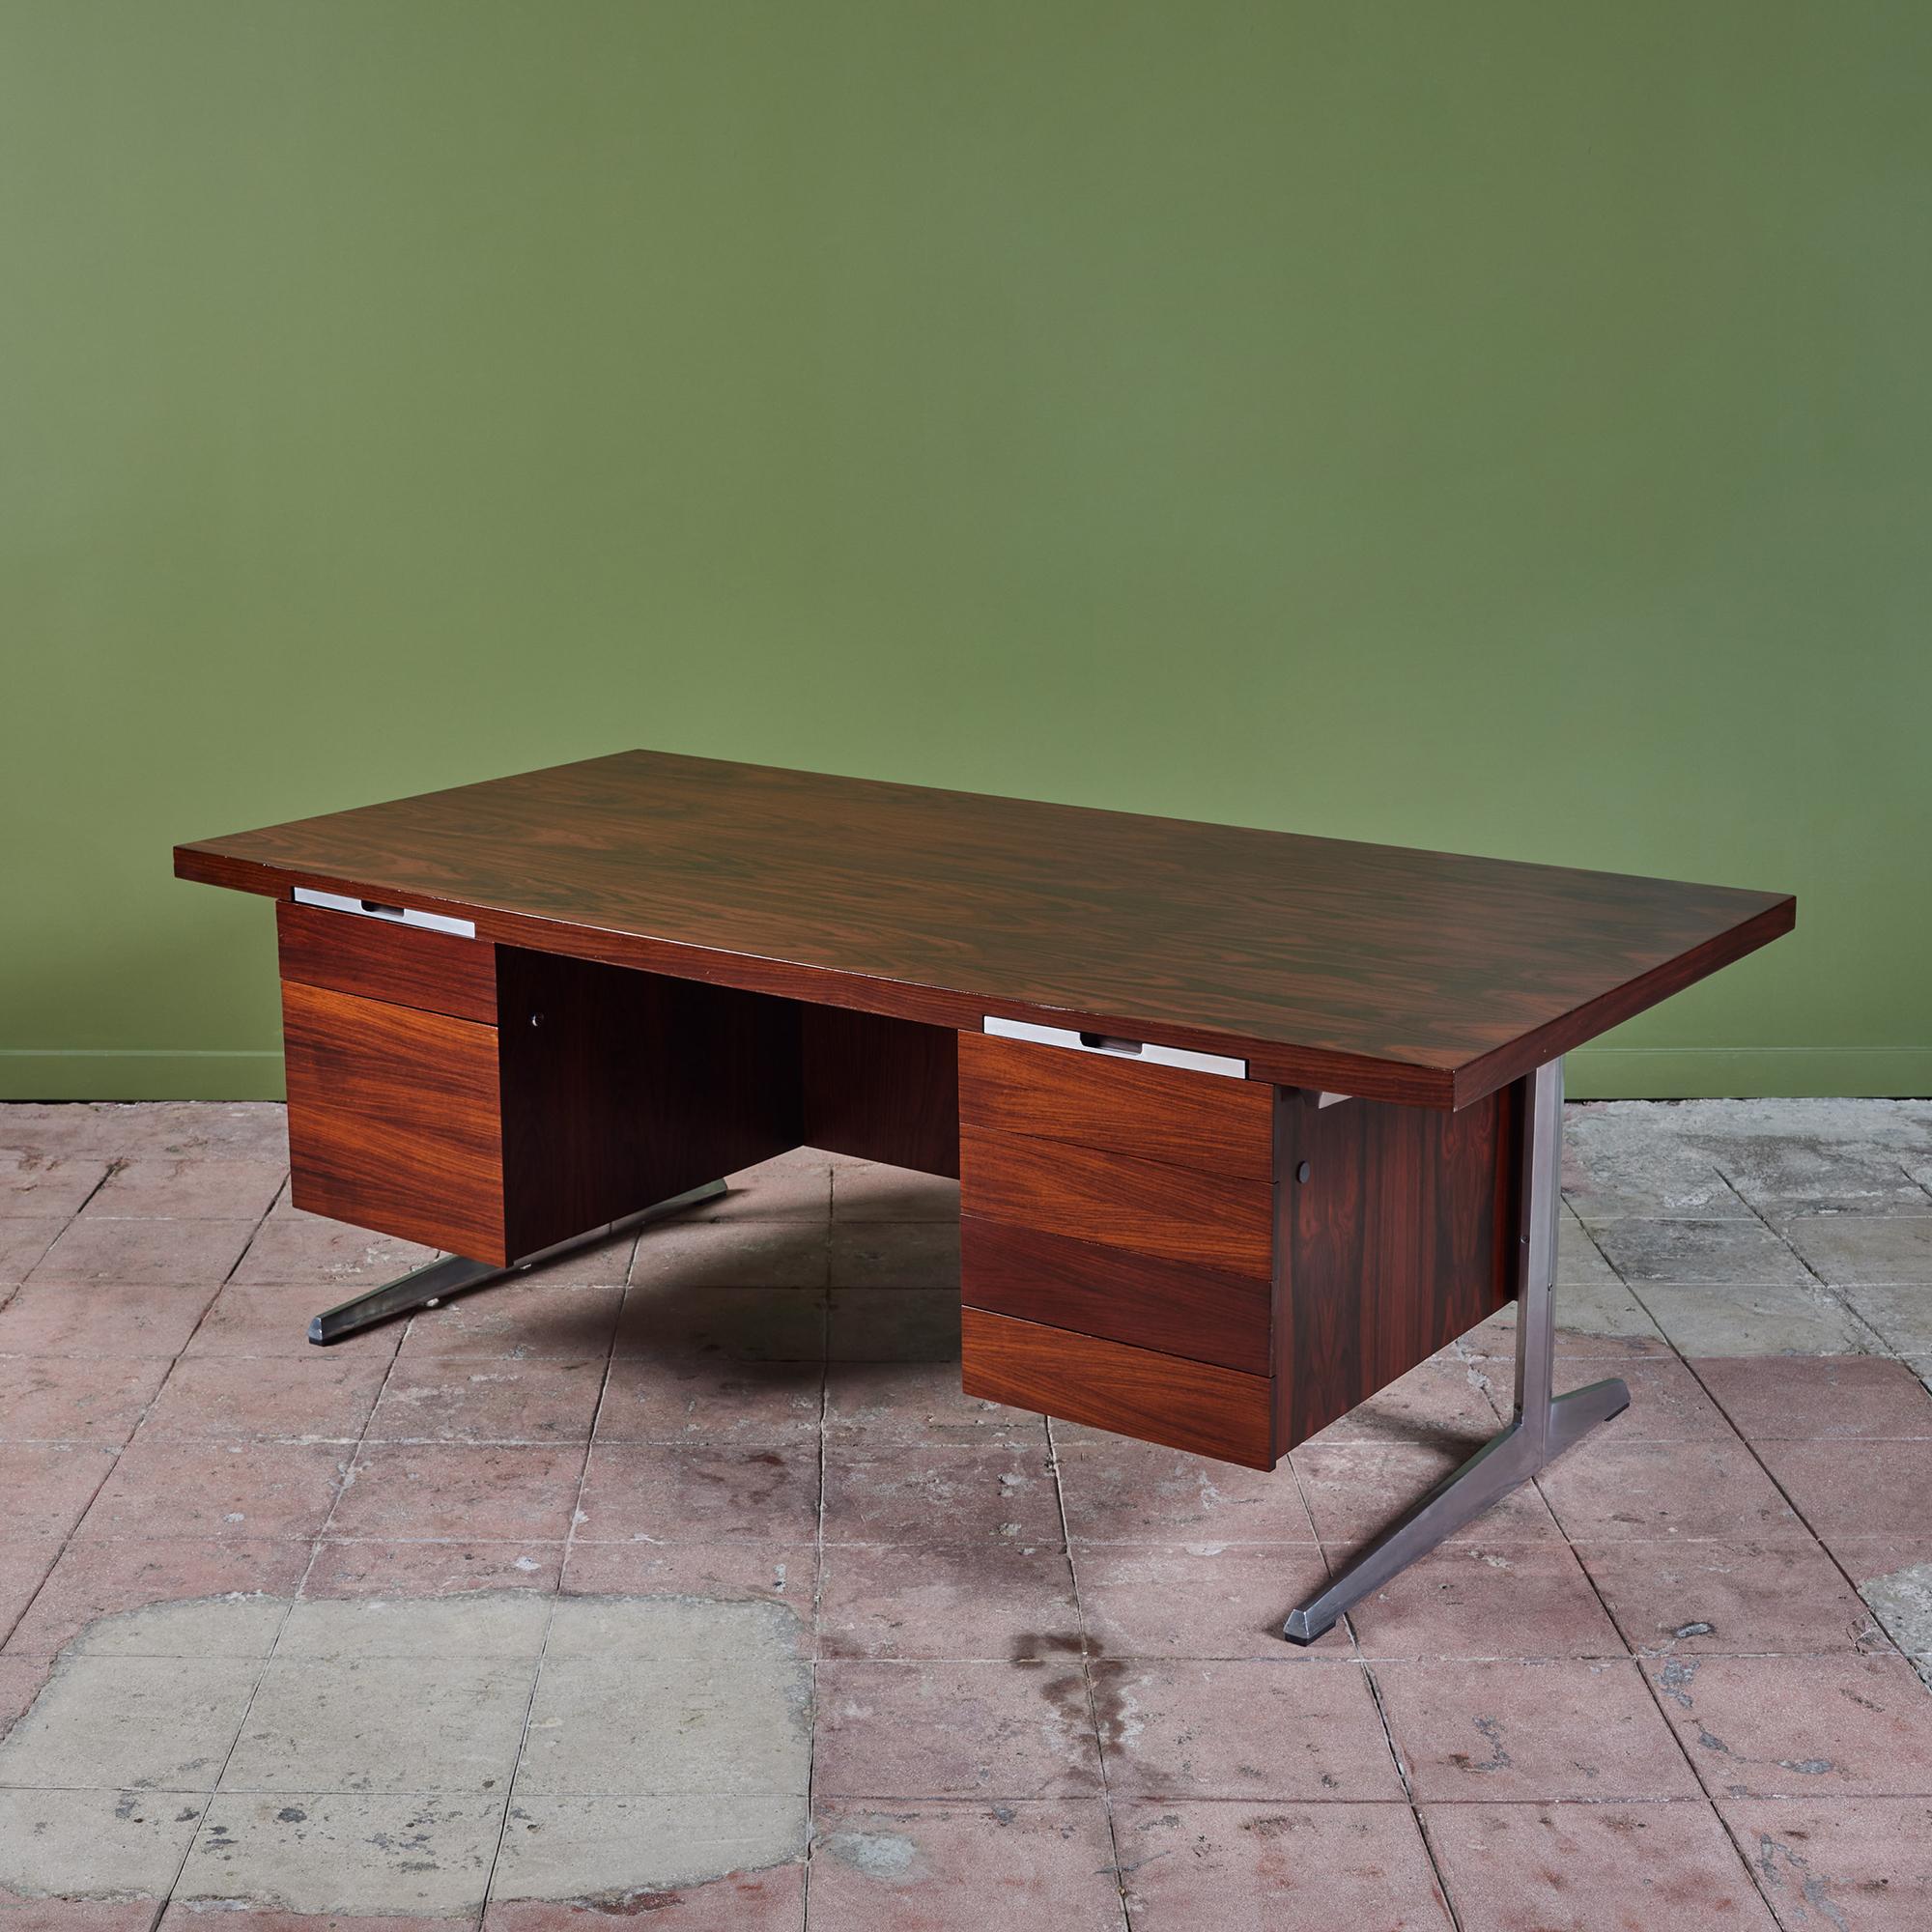 Atemberaubender Schreibtisch aus Palisanderholz von Marius Byrialsen für Nipu, ca. 1960er Jahre, Dänemark. Der Schreibtisch besteht aus einem Aluminiumgestell mit einer Palisanderholzplatte, sechs Schubladen und zwei schmalen Bleistiftschubladen,